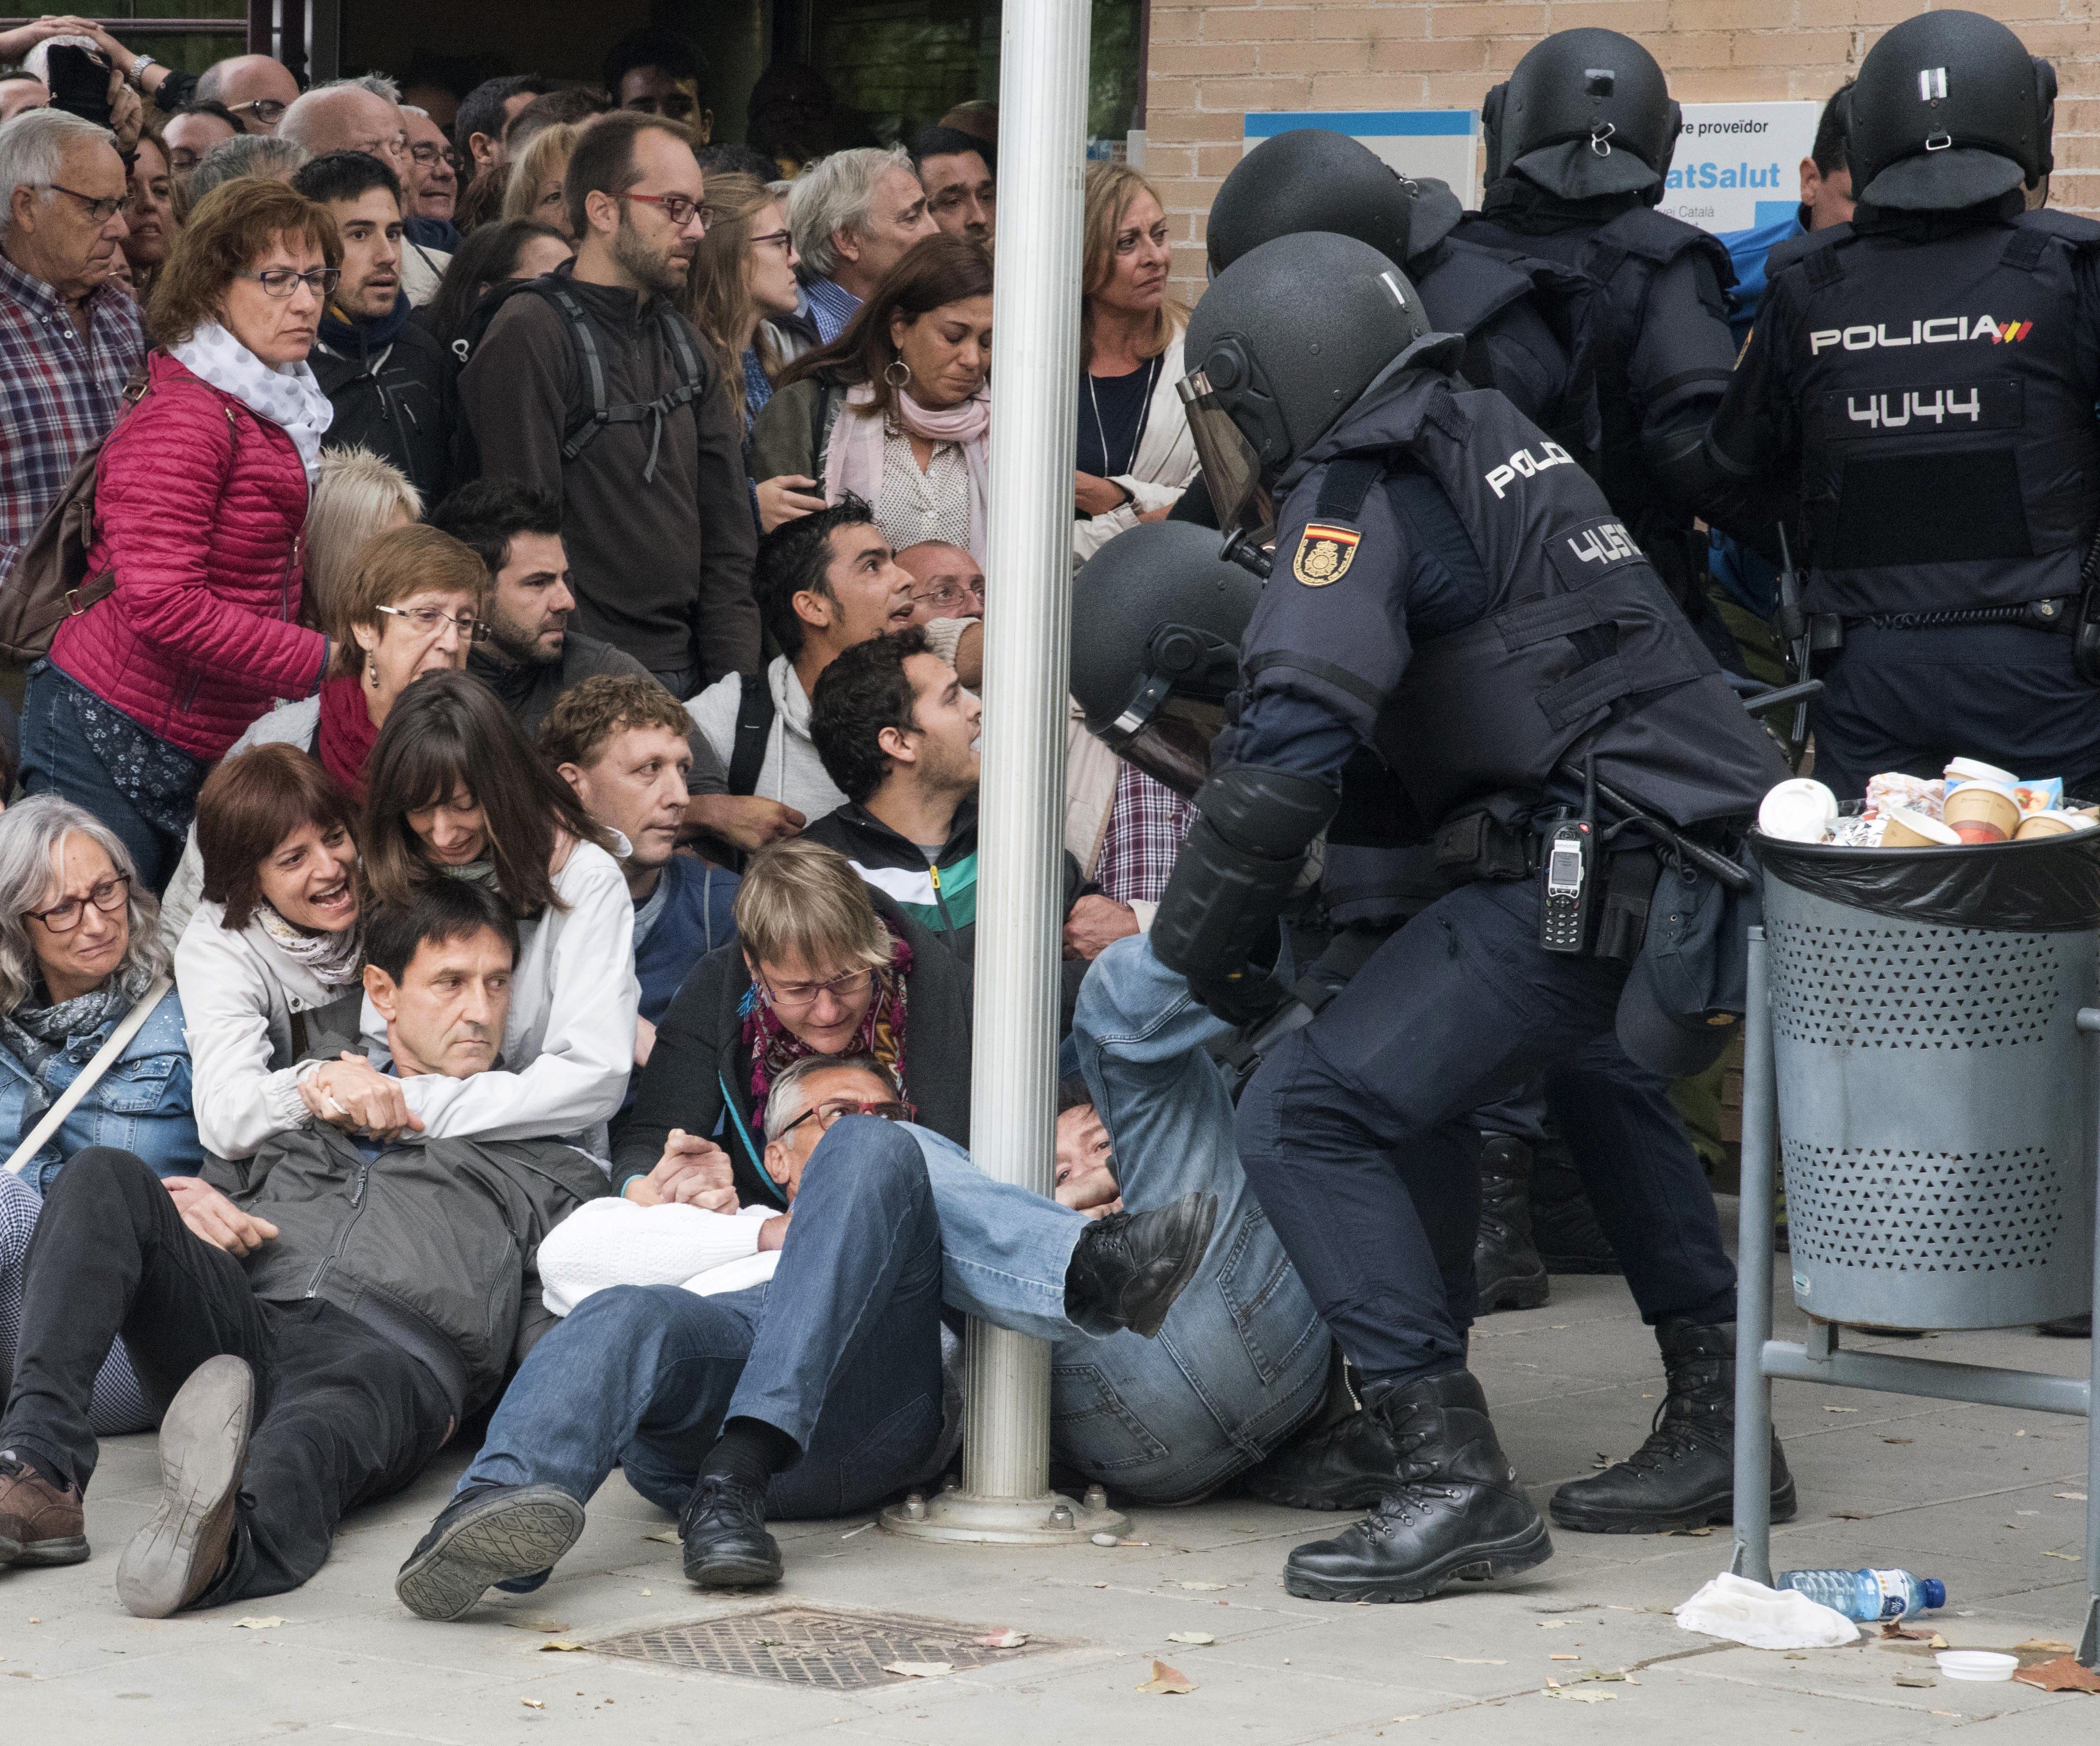 Cierra la empresa catalana que hizo anuncios pro-abusos policiales: "Que se joda"